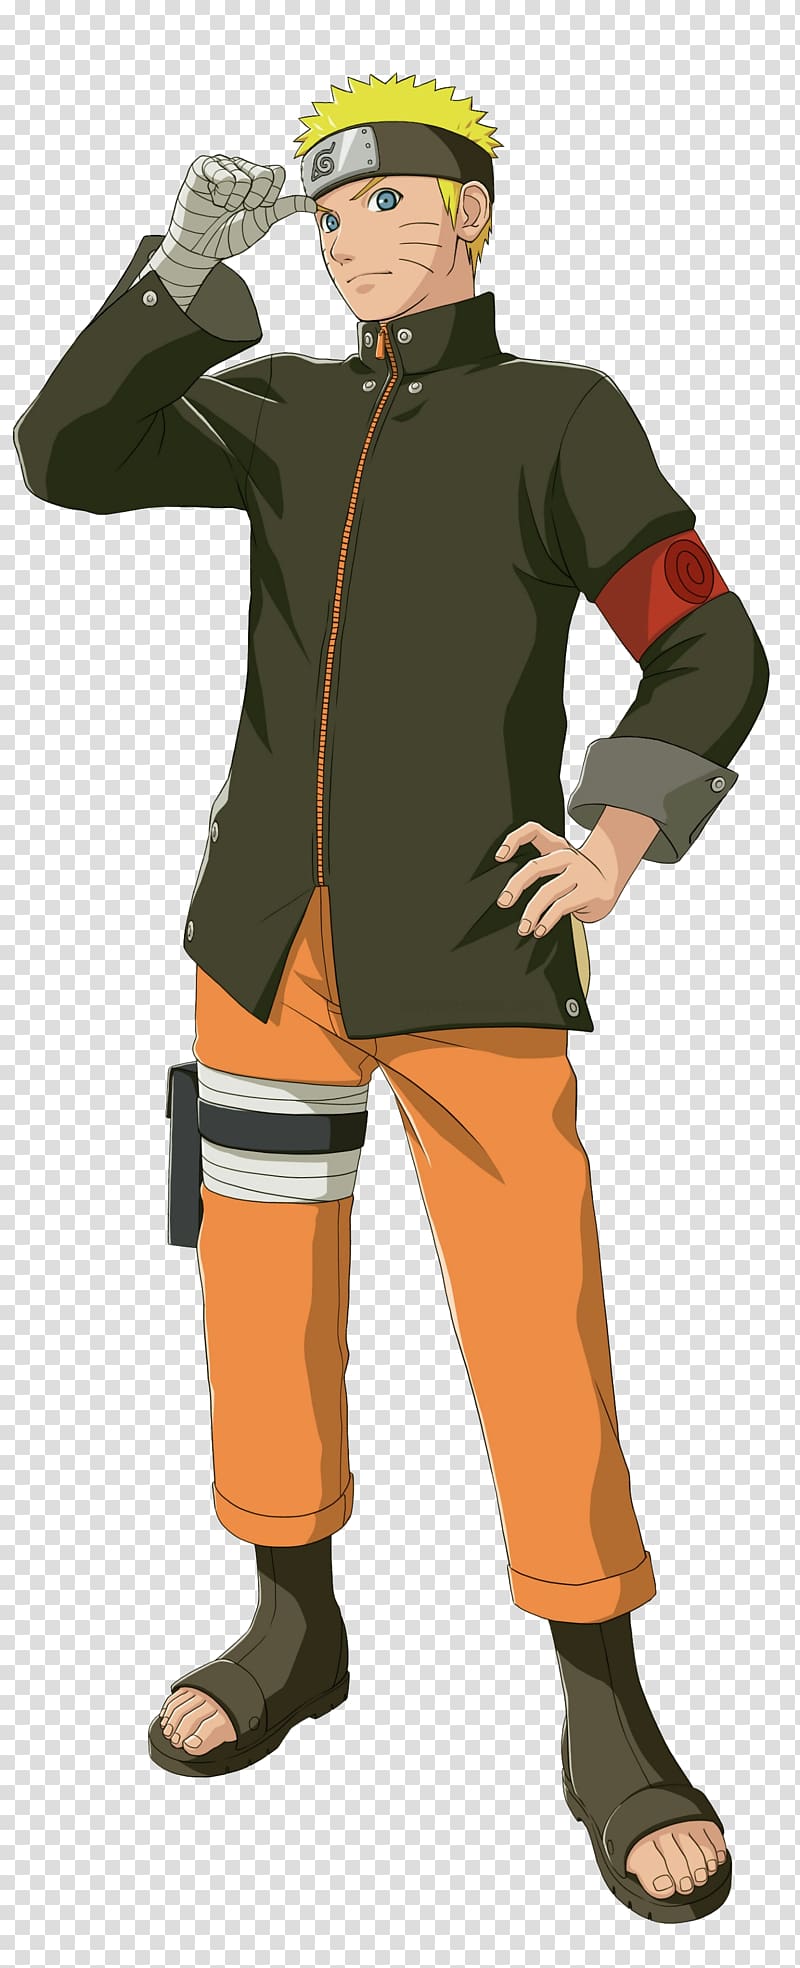 Naruto Shippuden: Ultimate Ninja Storm 4 Naruto Uzumaki Sasuke